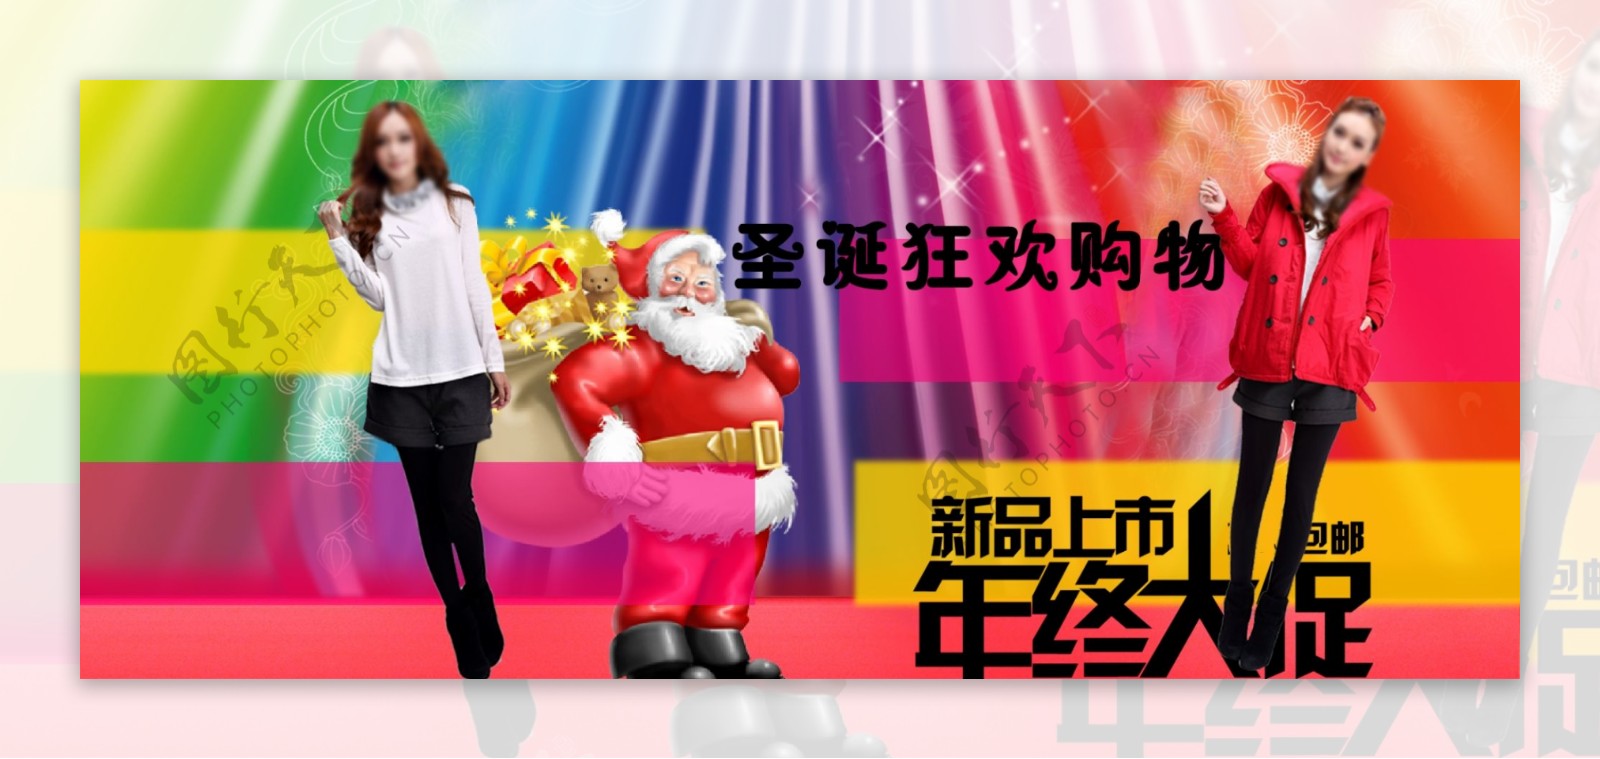 淘宝服装圣诞促销海报PSD女装